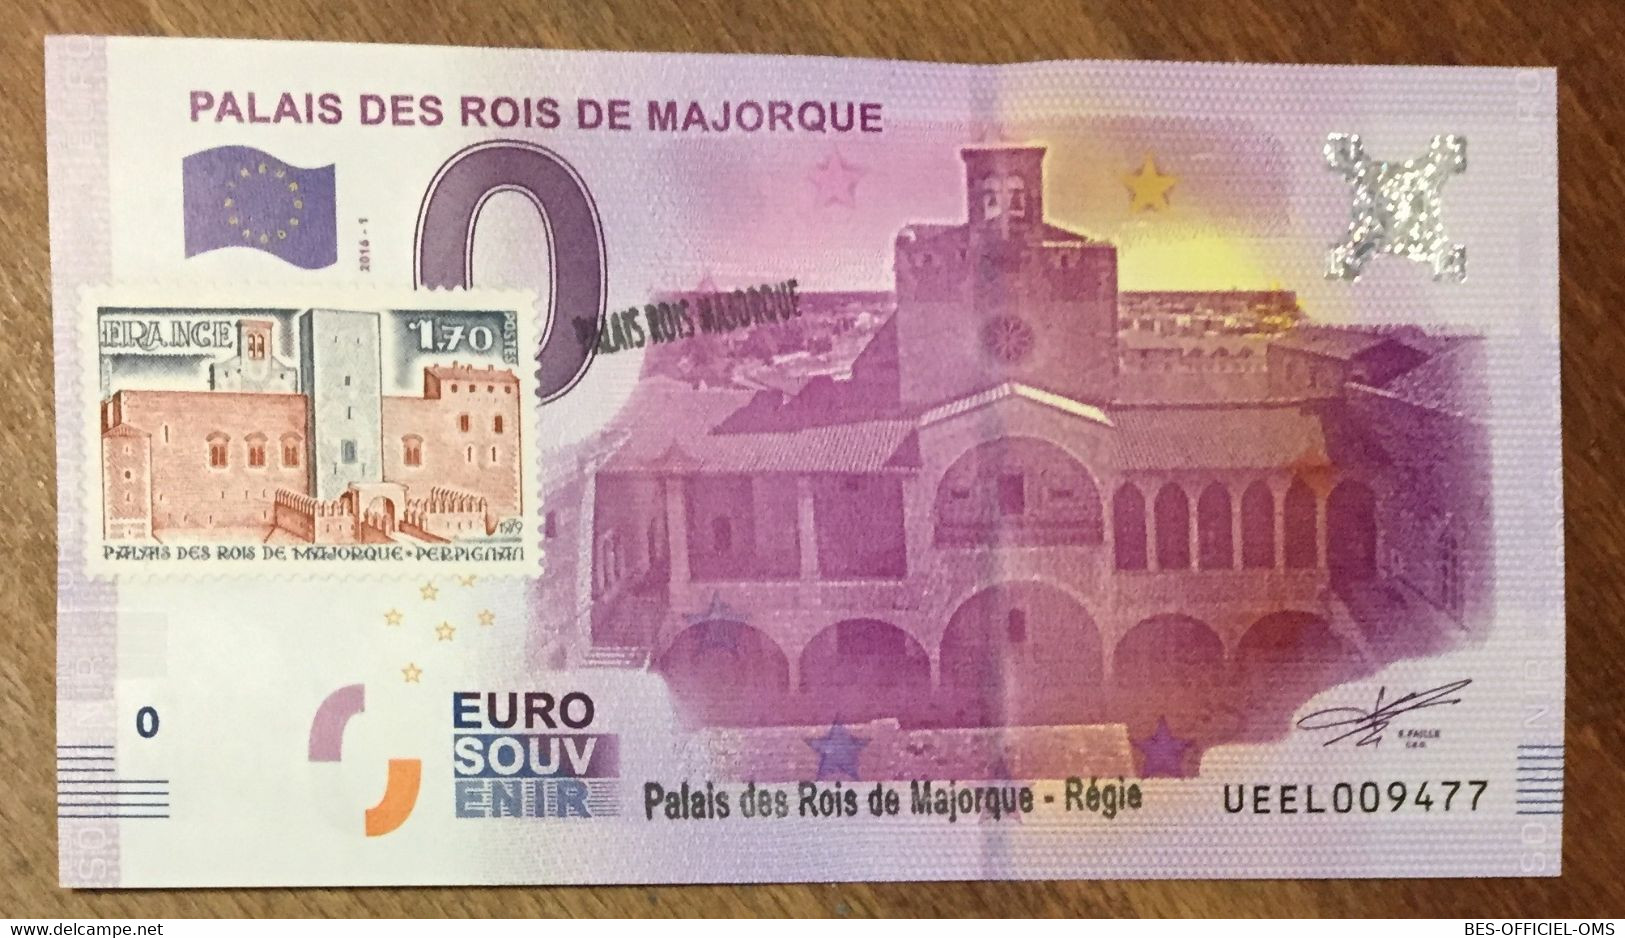 2016 BILLET 0 EURO SOUVENIR DPT 66 PALAIS DES ROIS DE MAJORQUE + TIMBRE ZERO 0 EURO SCHEIN BANKNOTE PAPER MONEY - Private Proofs / Unofficial